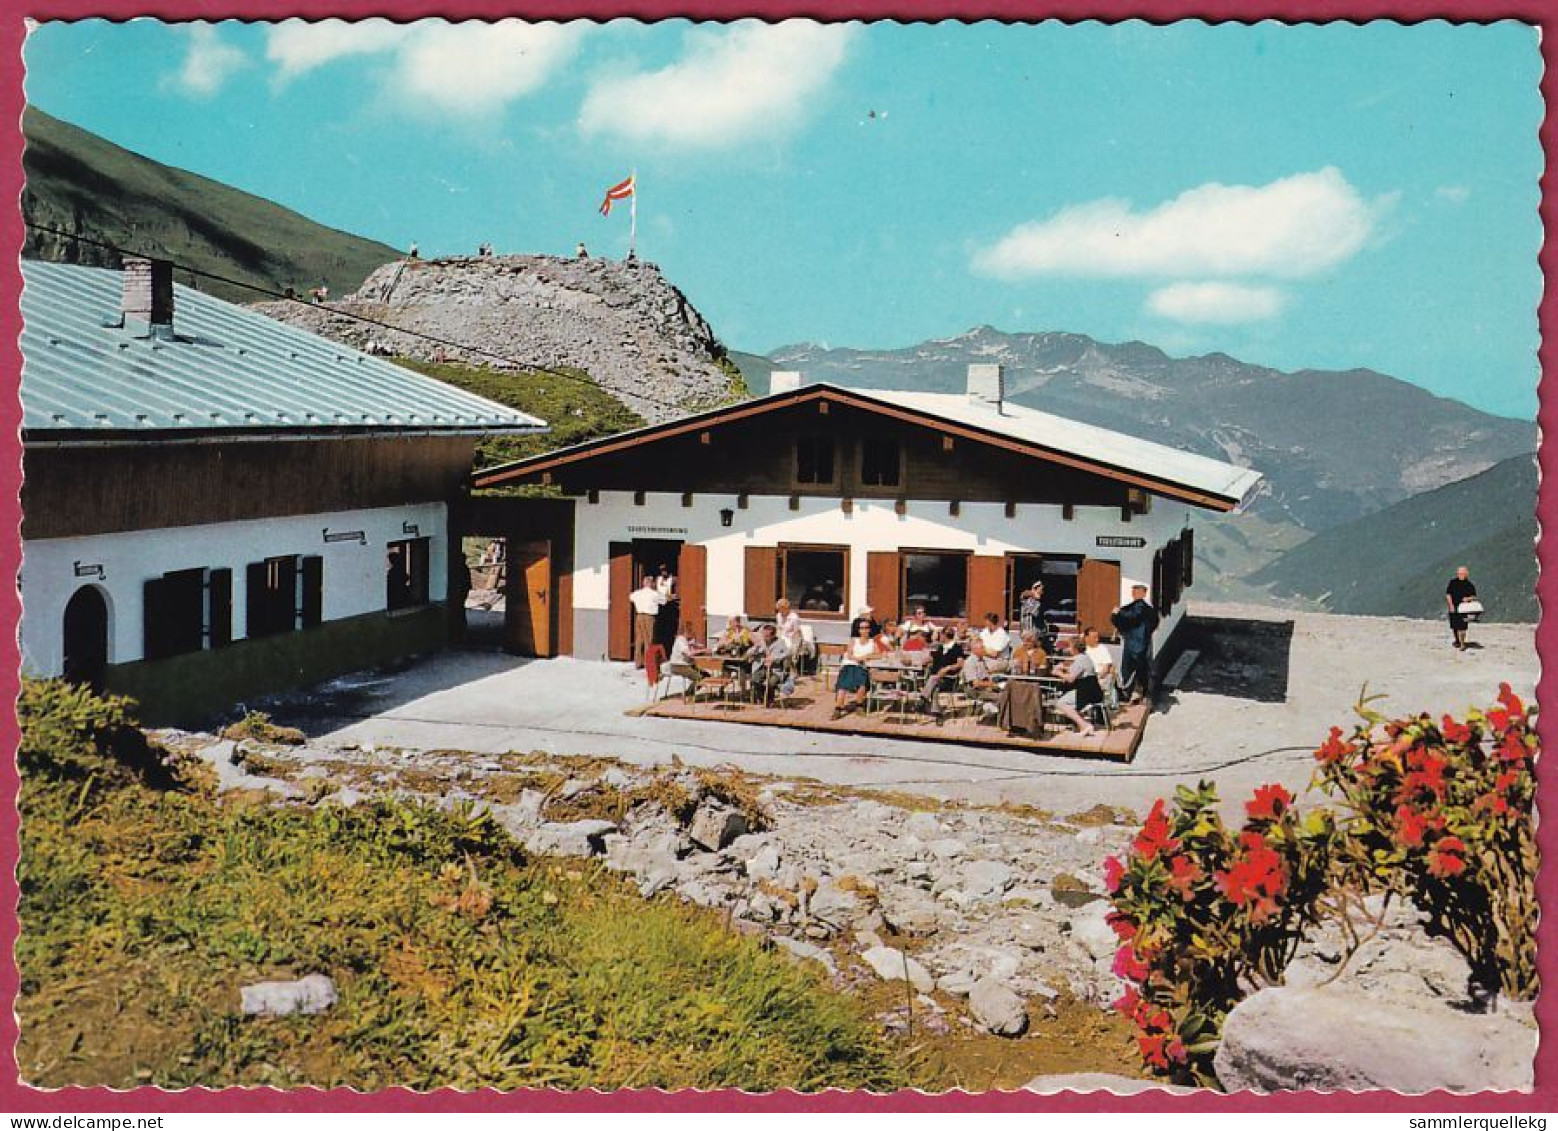 AK: Hintertuxer Gletscherbahn - Bergstation, Gelaufen 17. 8. 1967 (Nr. 4795) - Zillertal